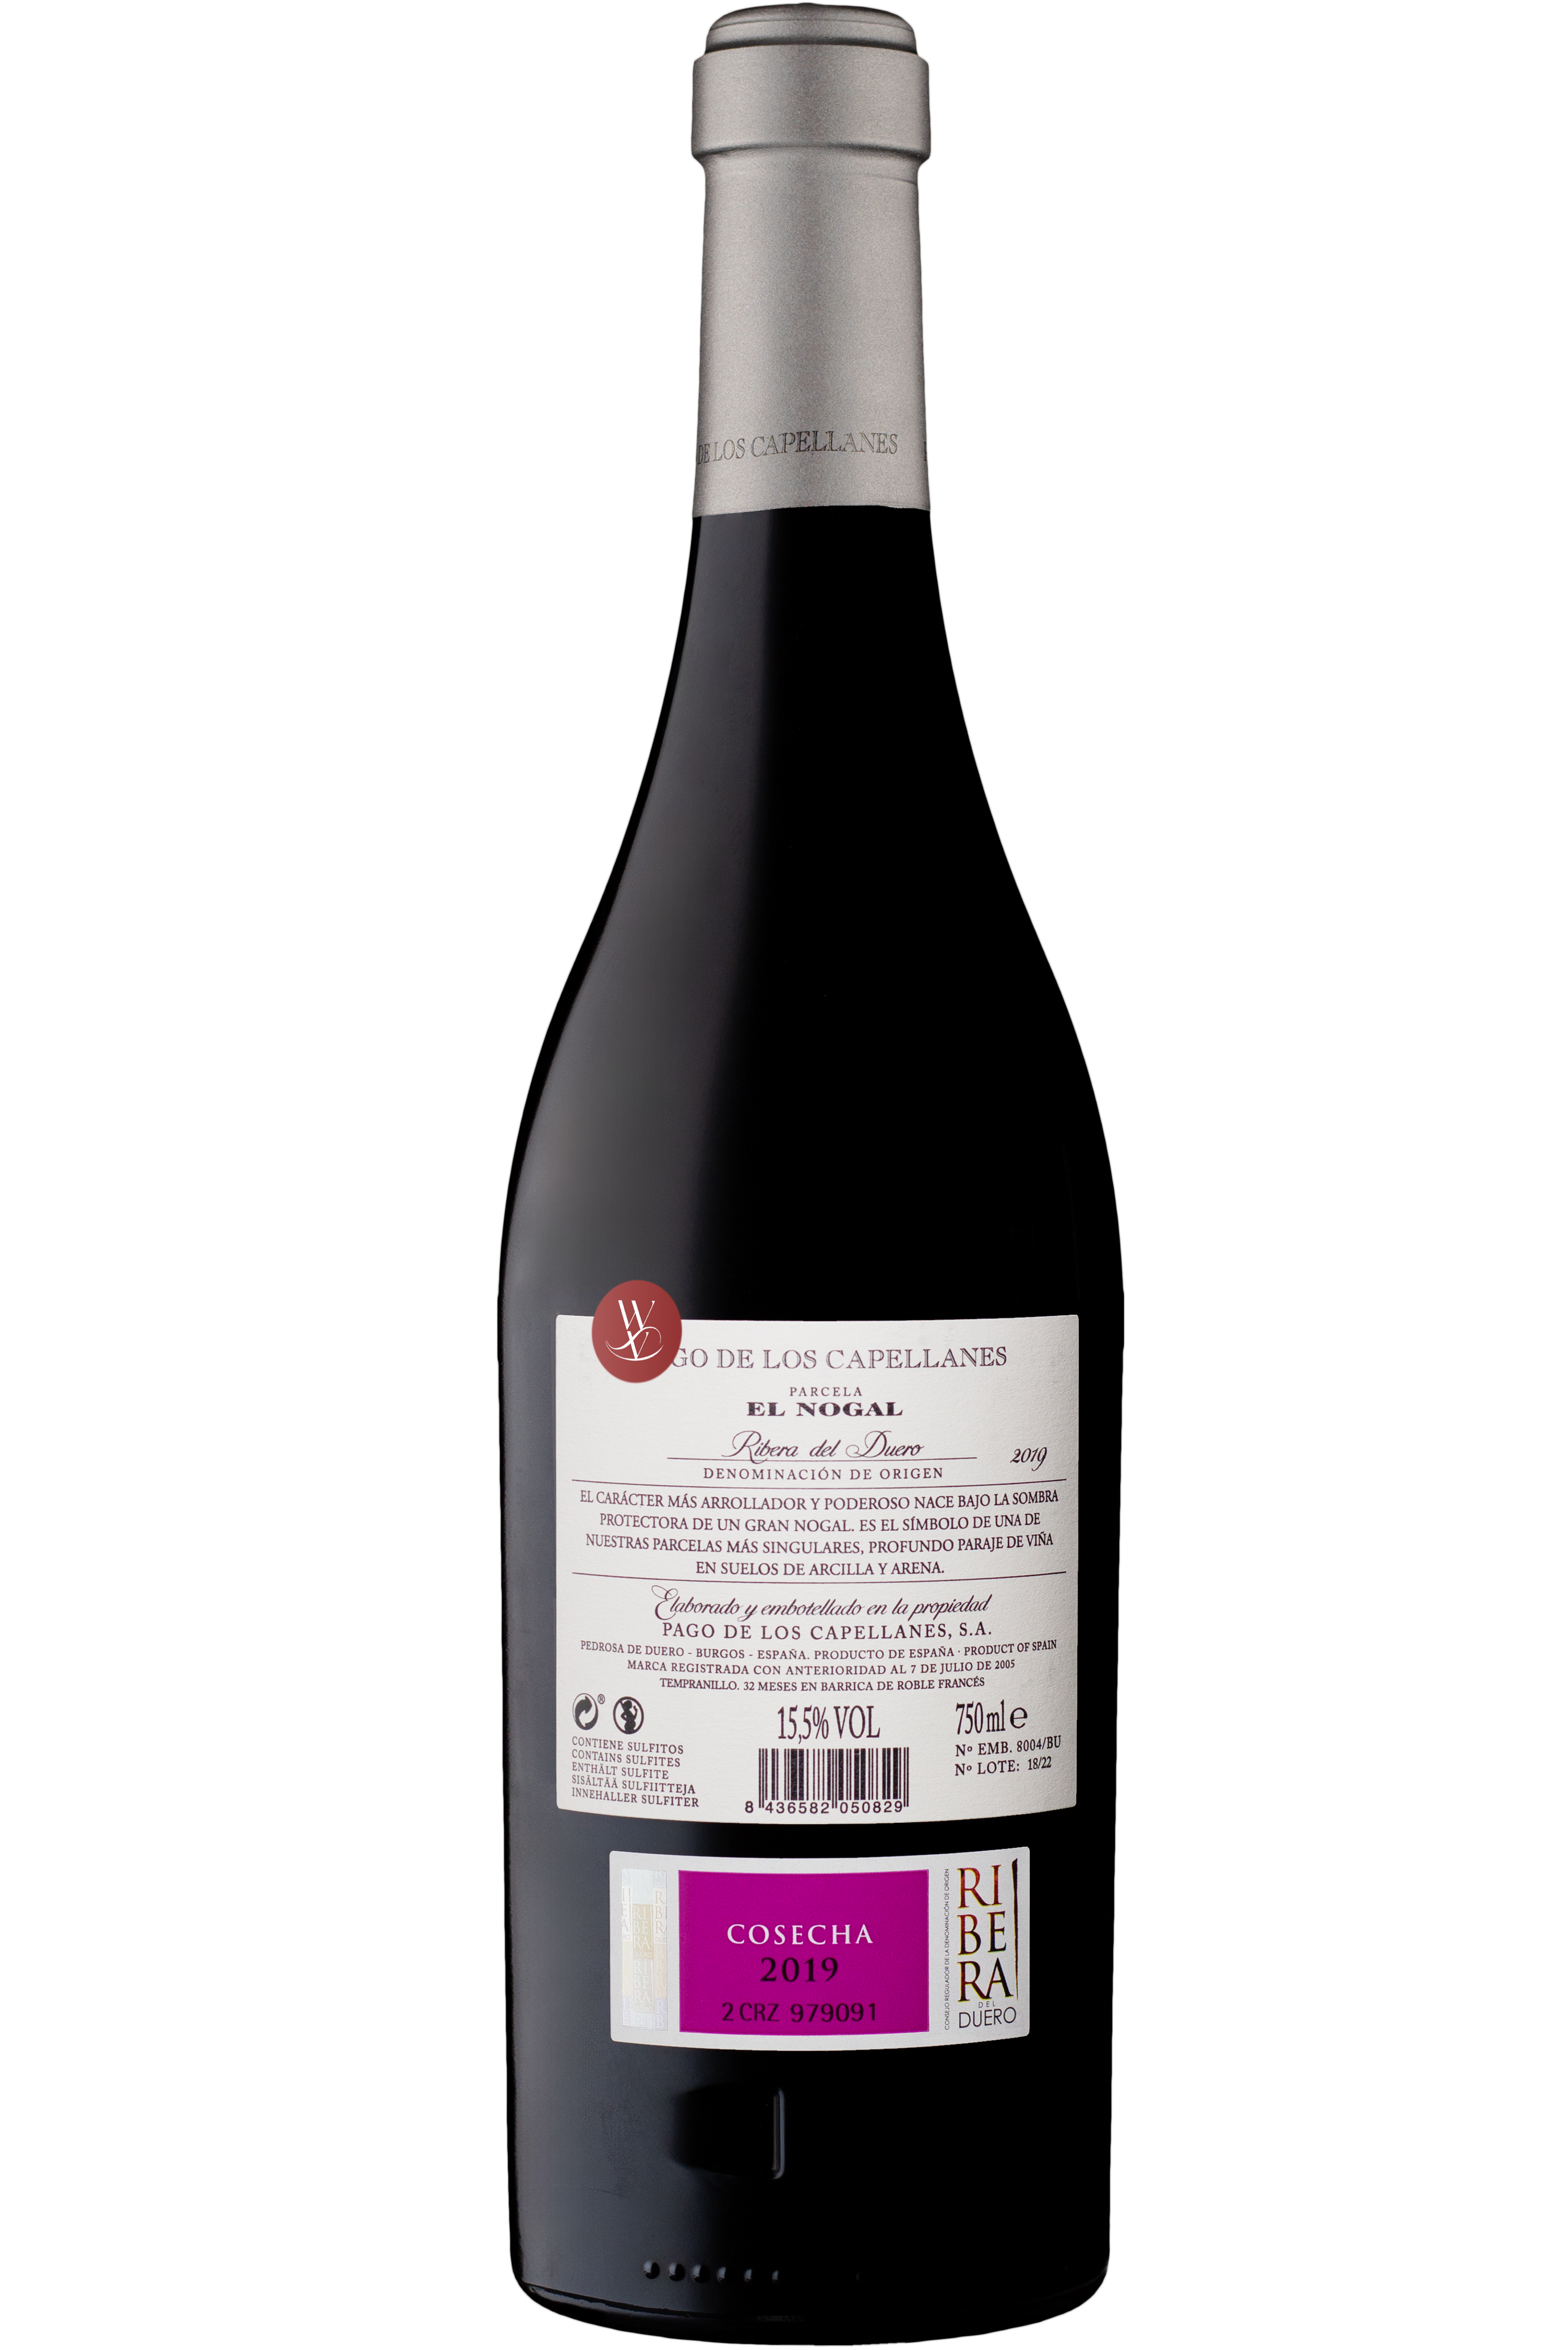 WineVins Pago de Los Capellanes El Nogal Tinto 2019